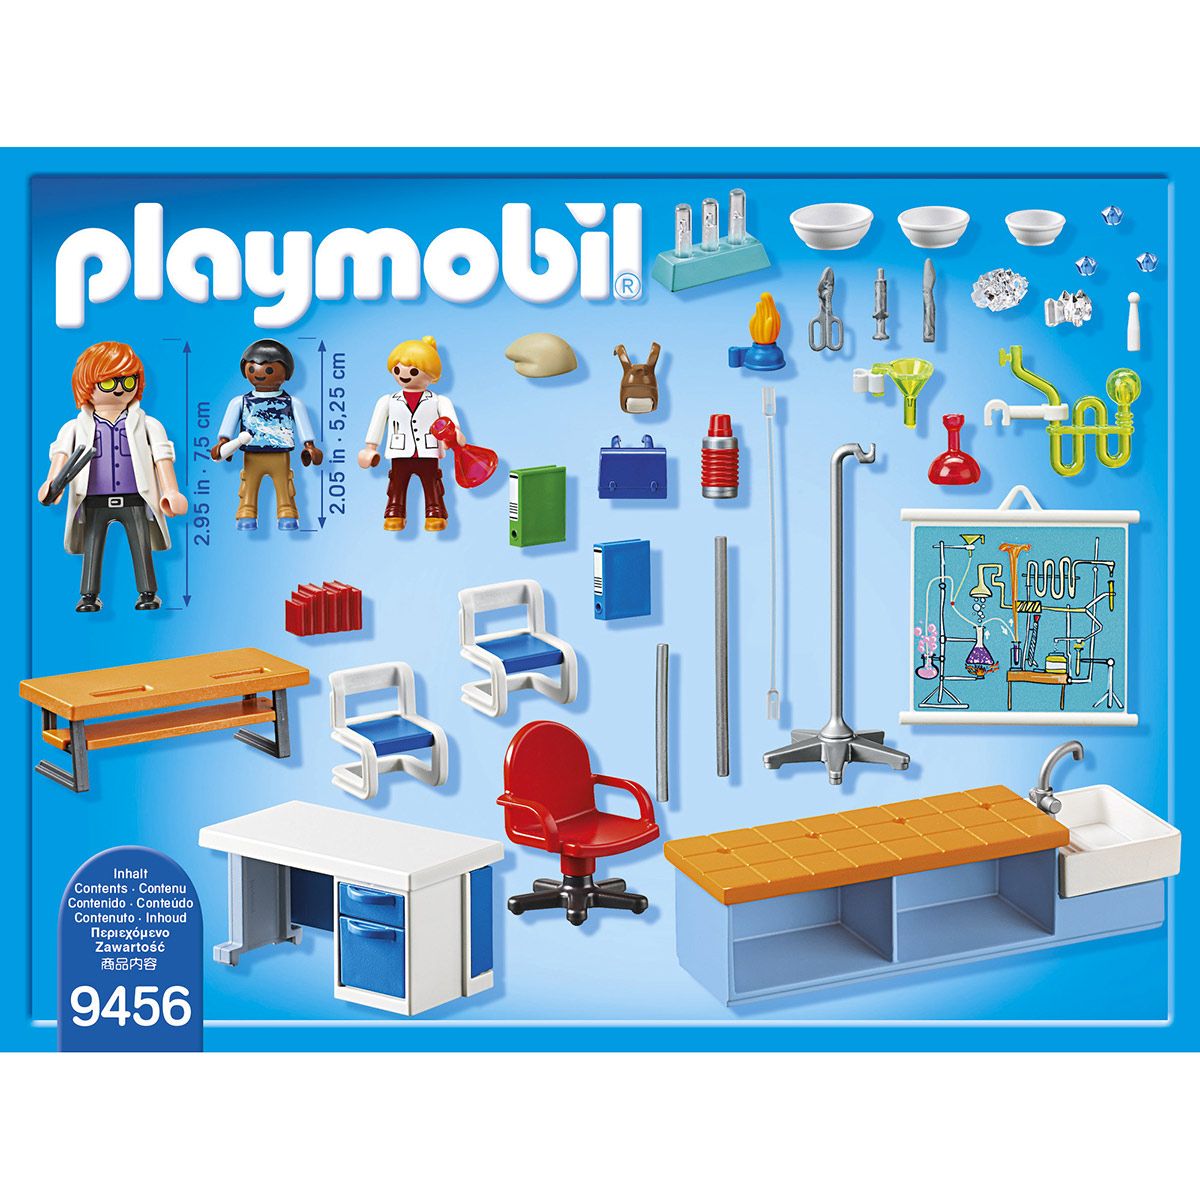 9456 Classe de Physique Chimie Playmobil 